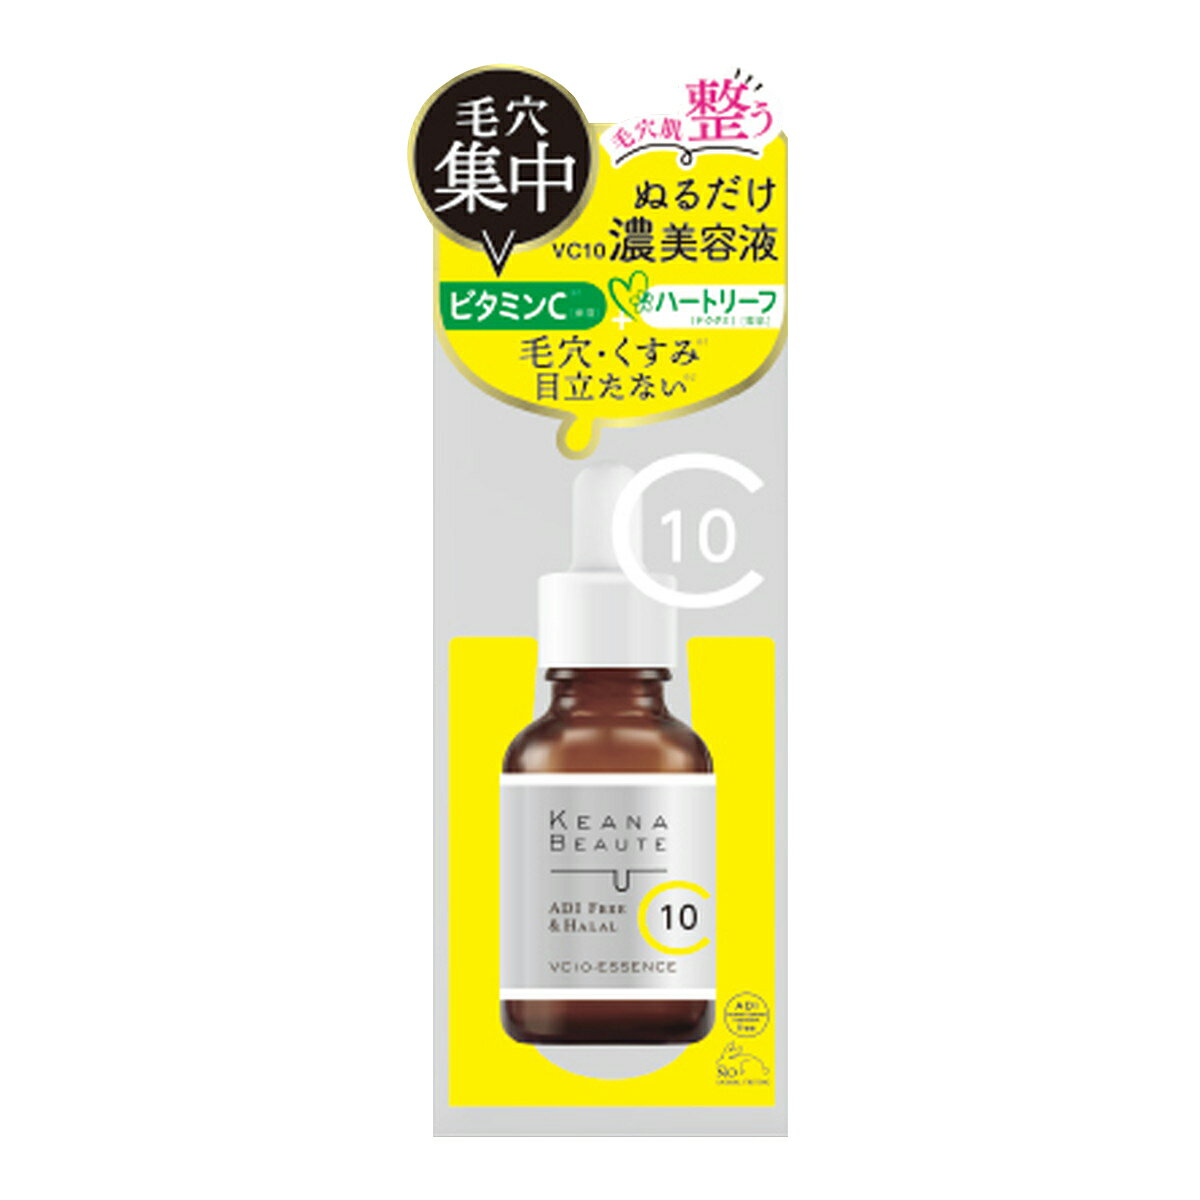 明色化粧品『ケアナボーテVC10濃美容液』